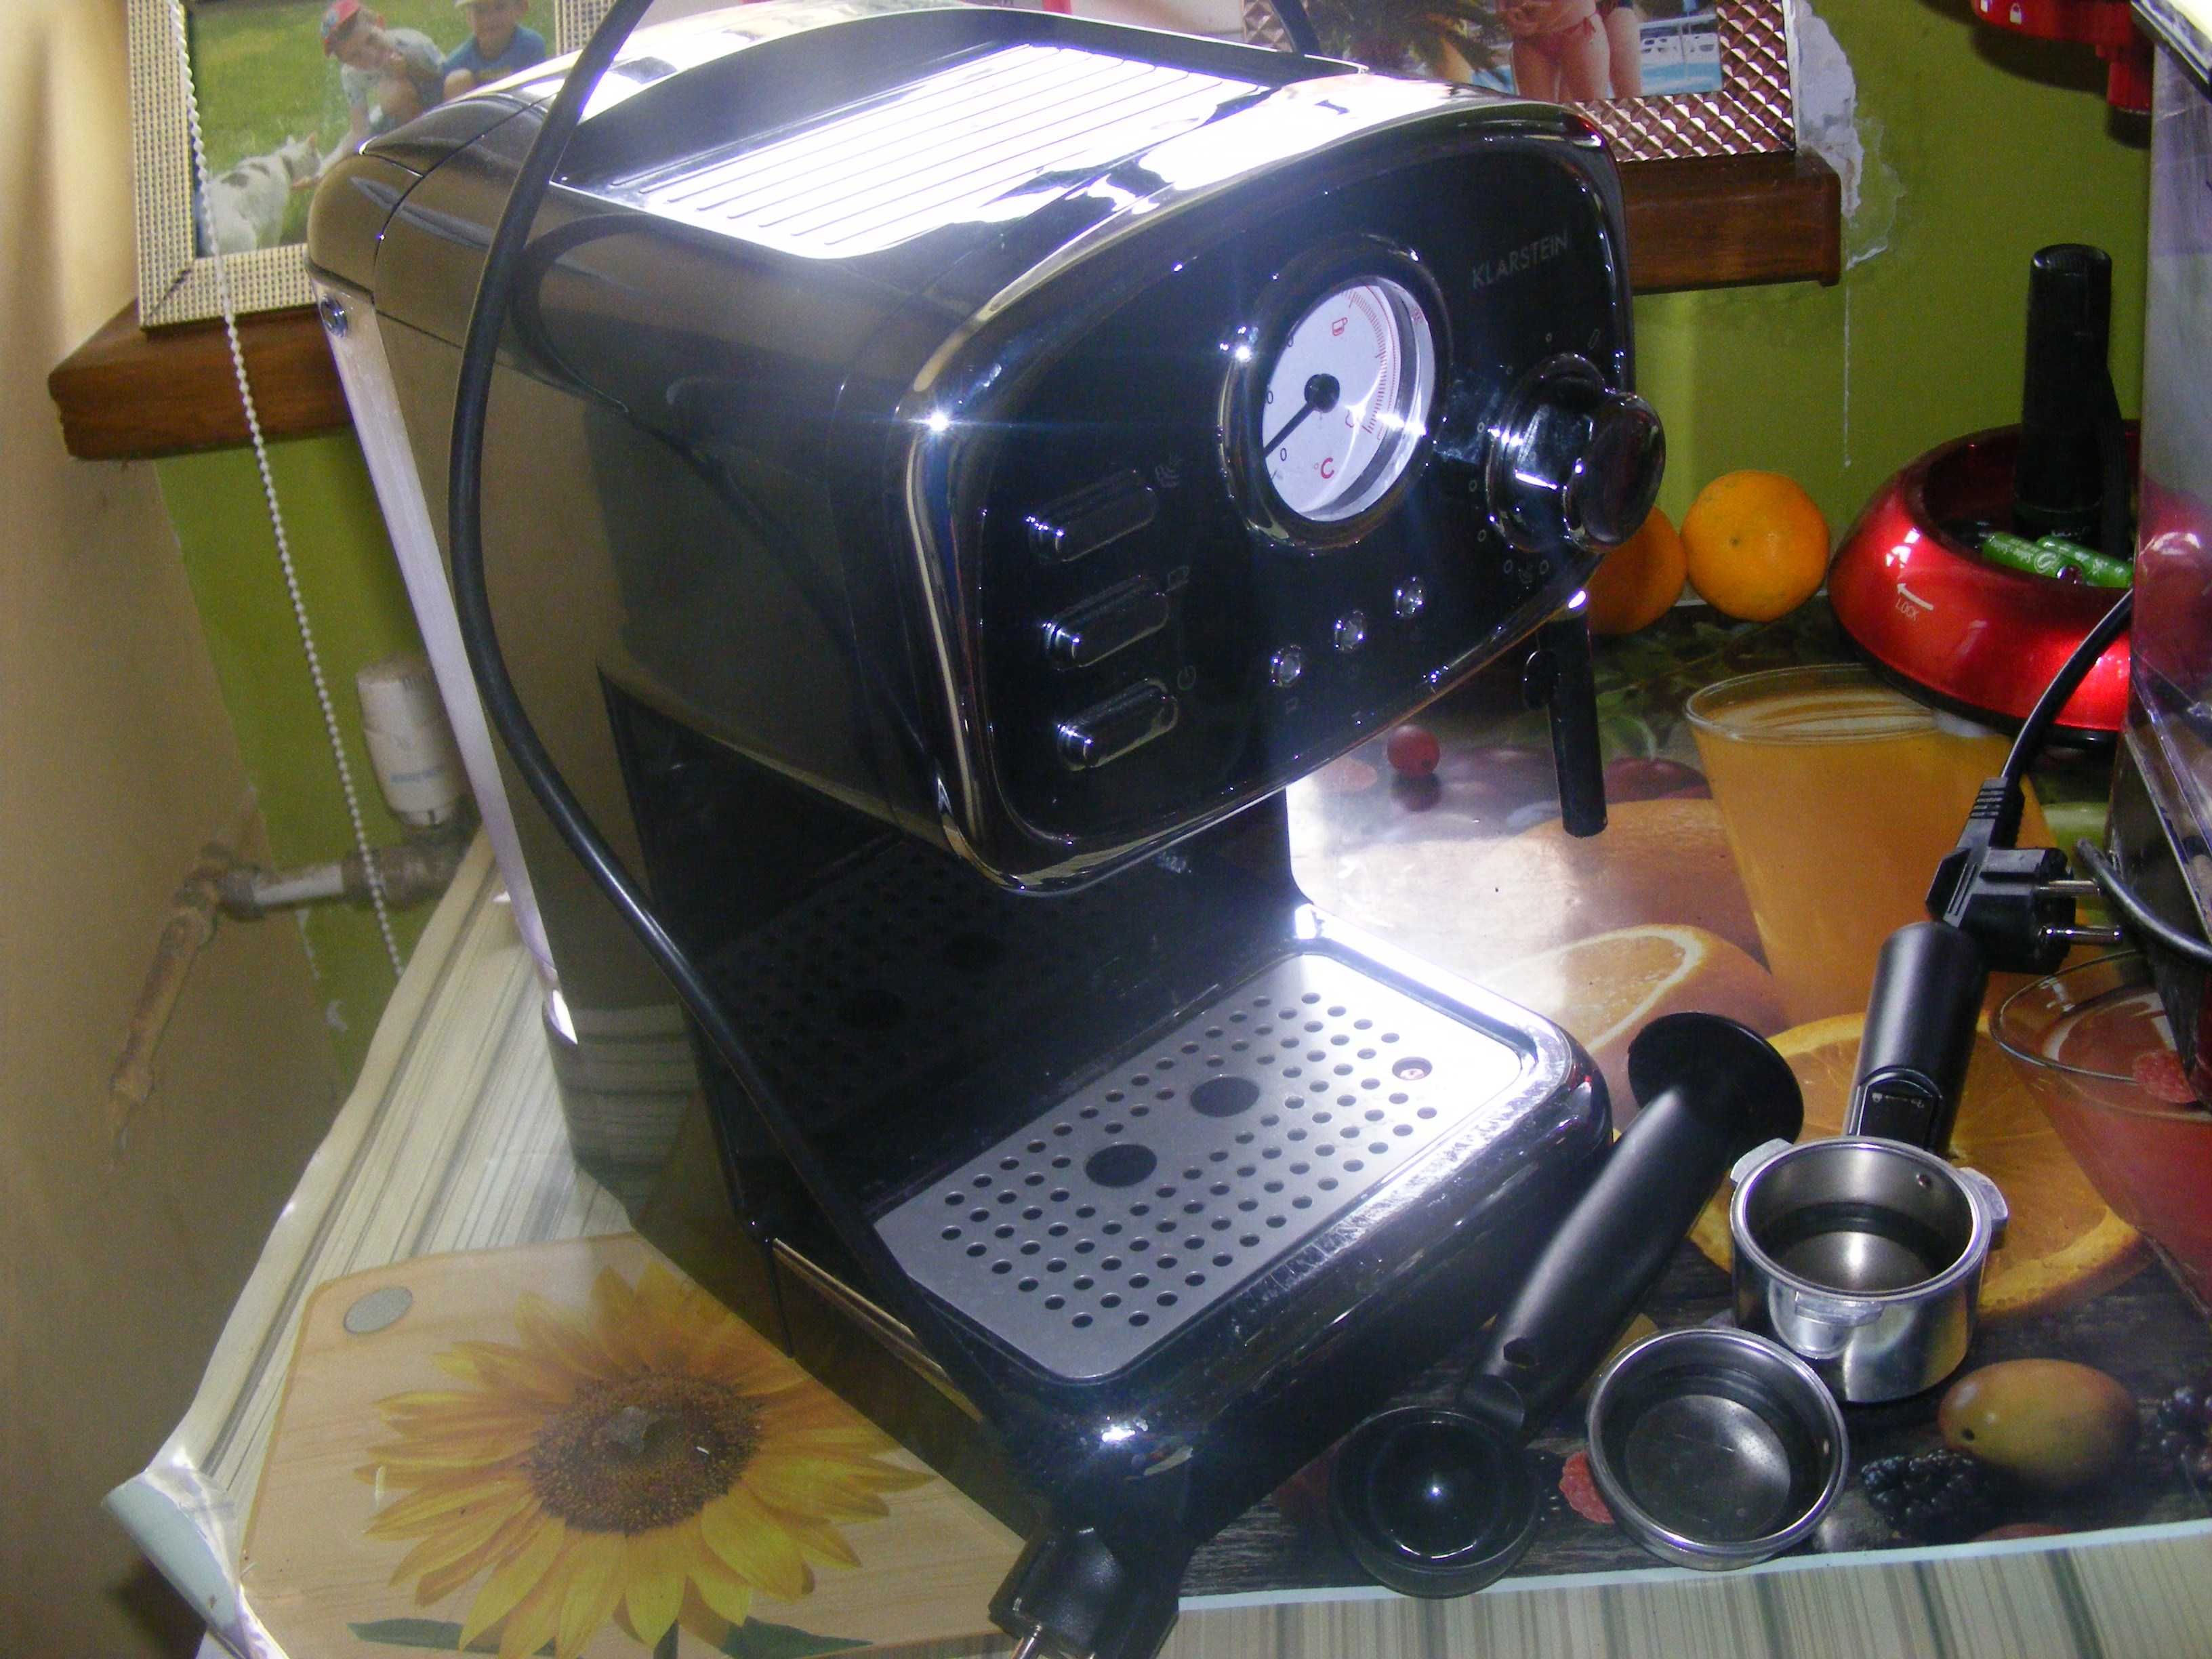 Nowy ekspress ciśnieniowy 20 bar + kawa 250g . Rewelacyjny smak i arom